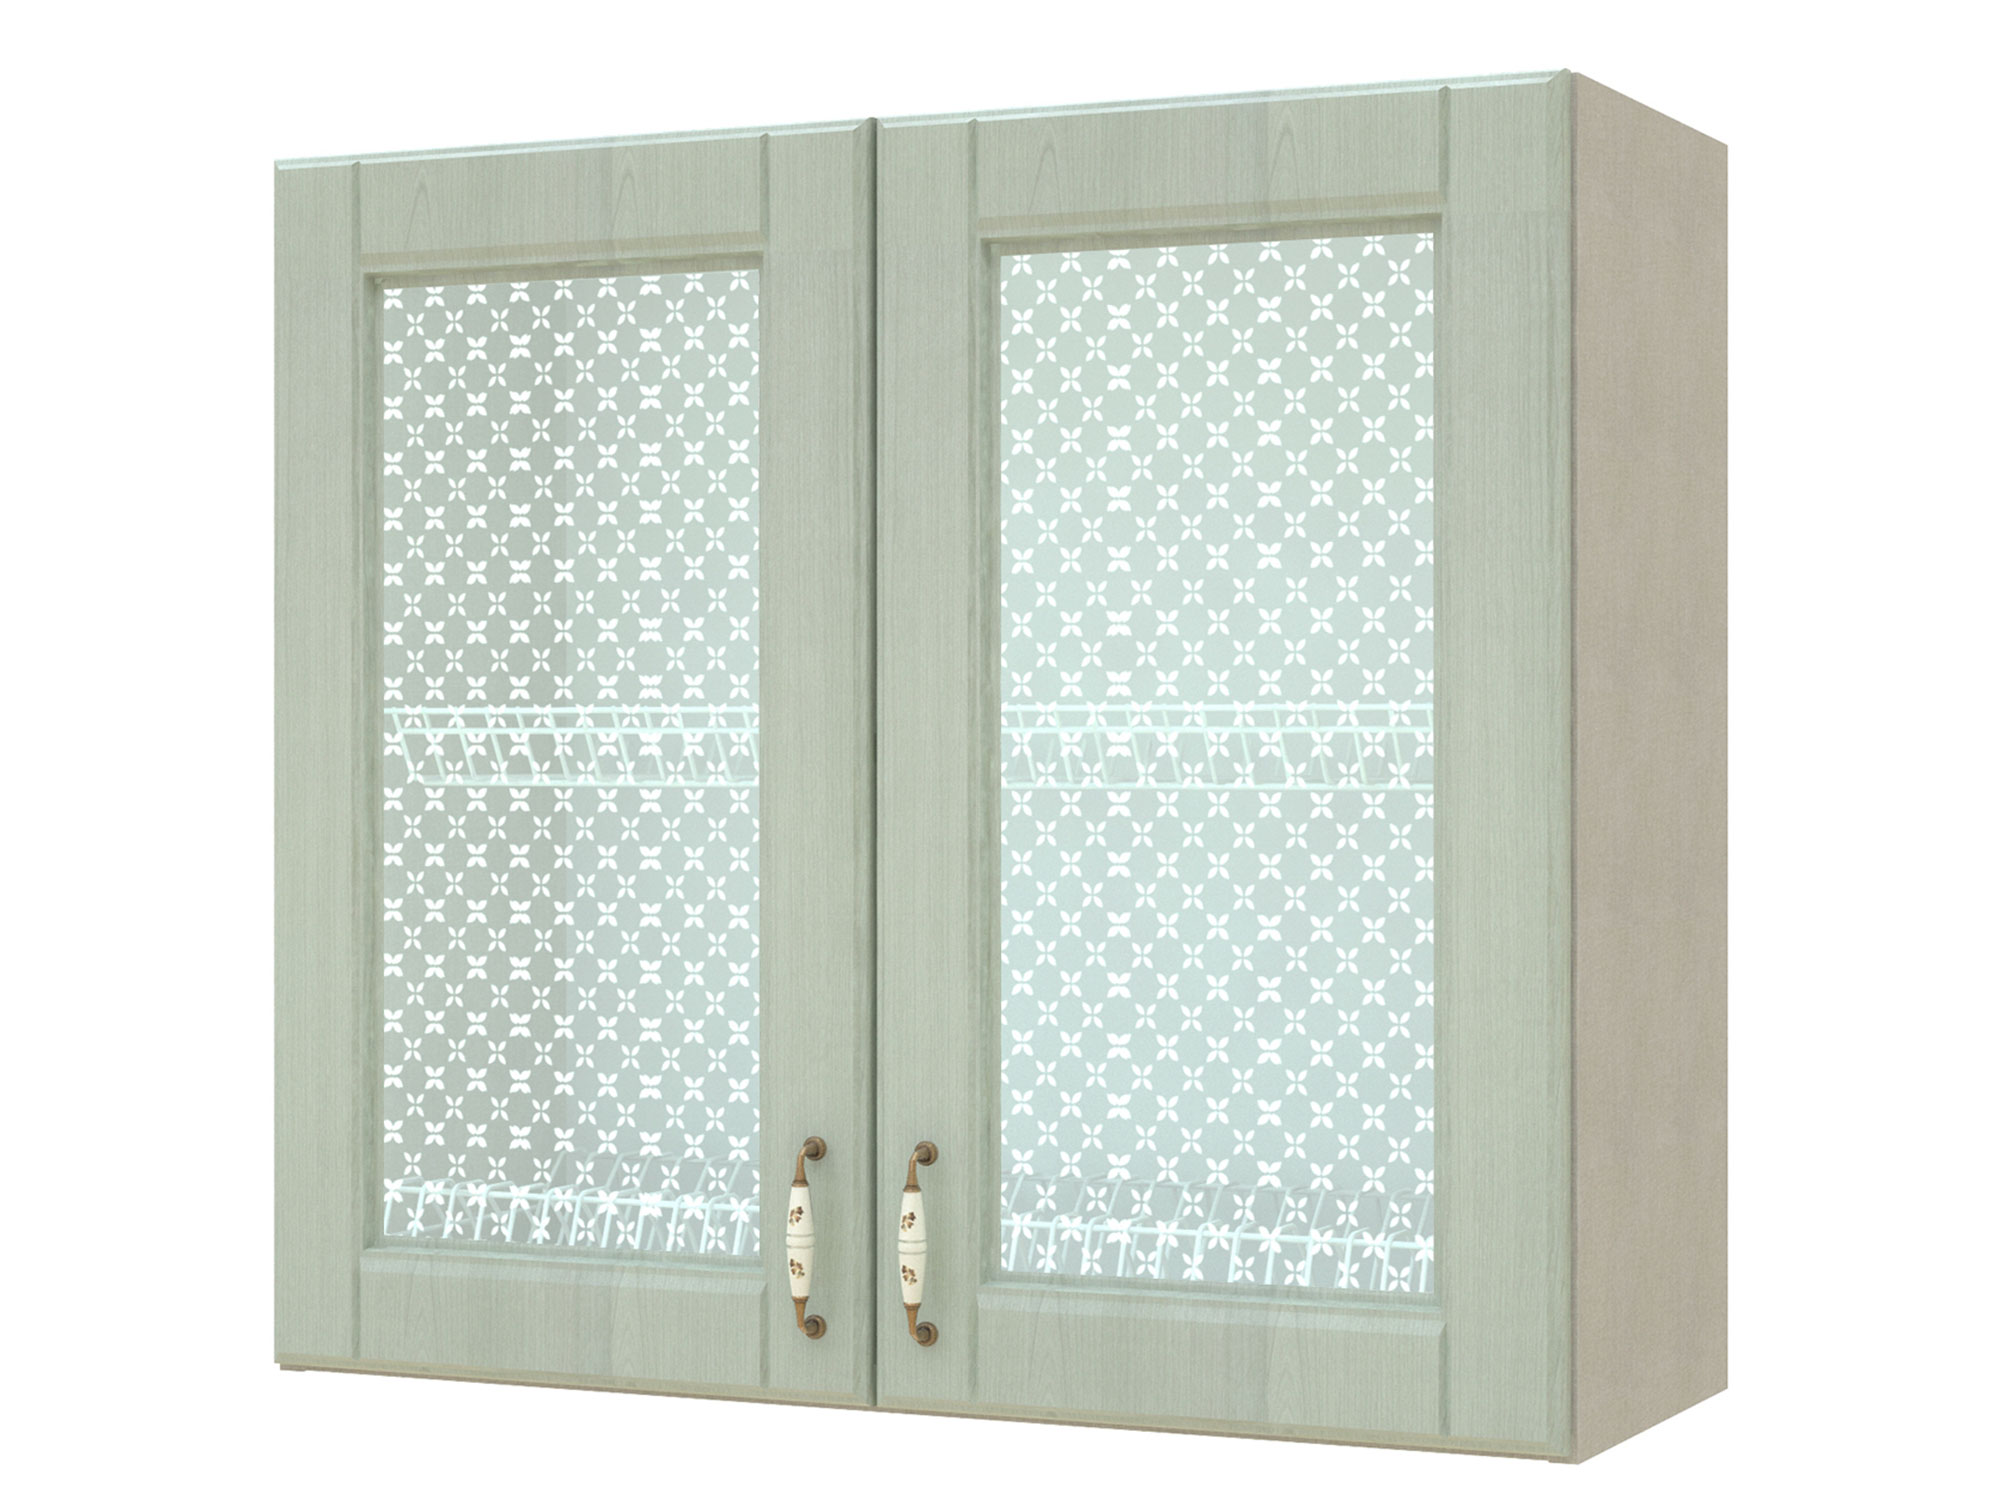 Шкаф-витрина с сушками двухдверный Изабелла 80 см Ясень зеленый, Бежевый, МДФ, Пленка ПВХ, КДСП